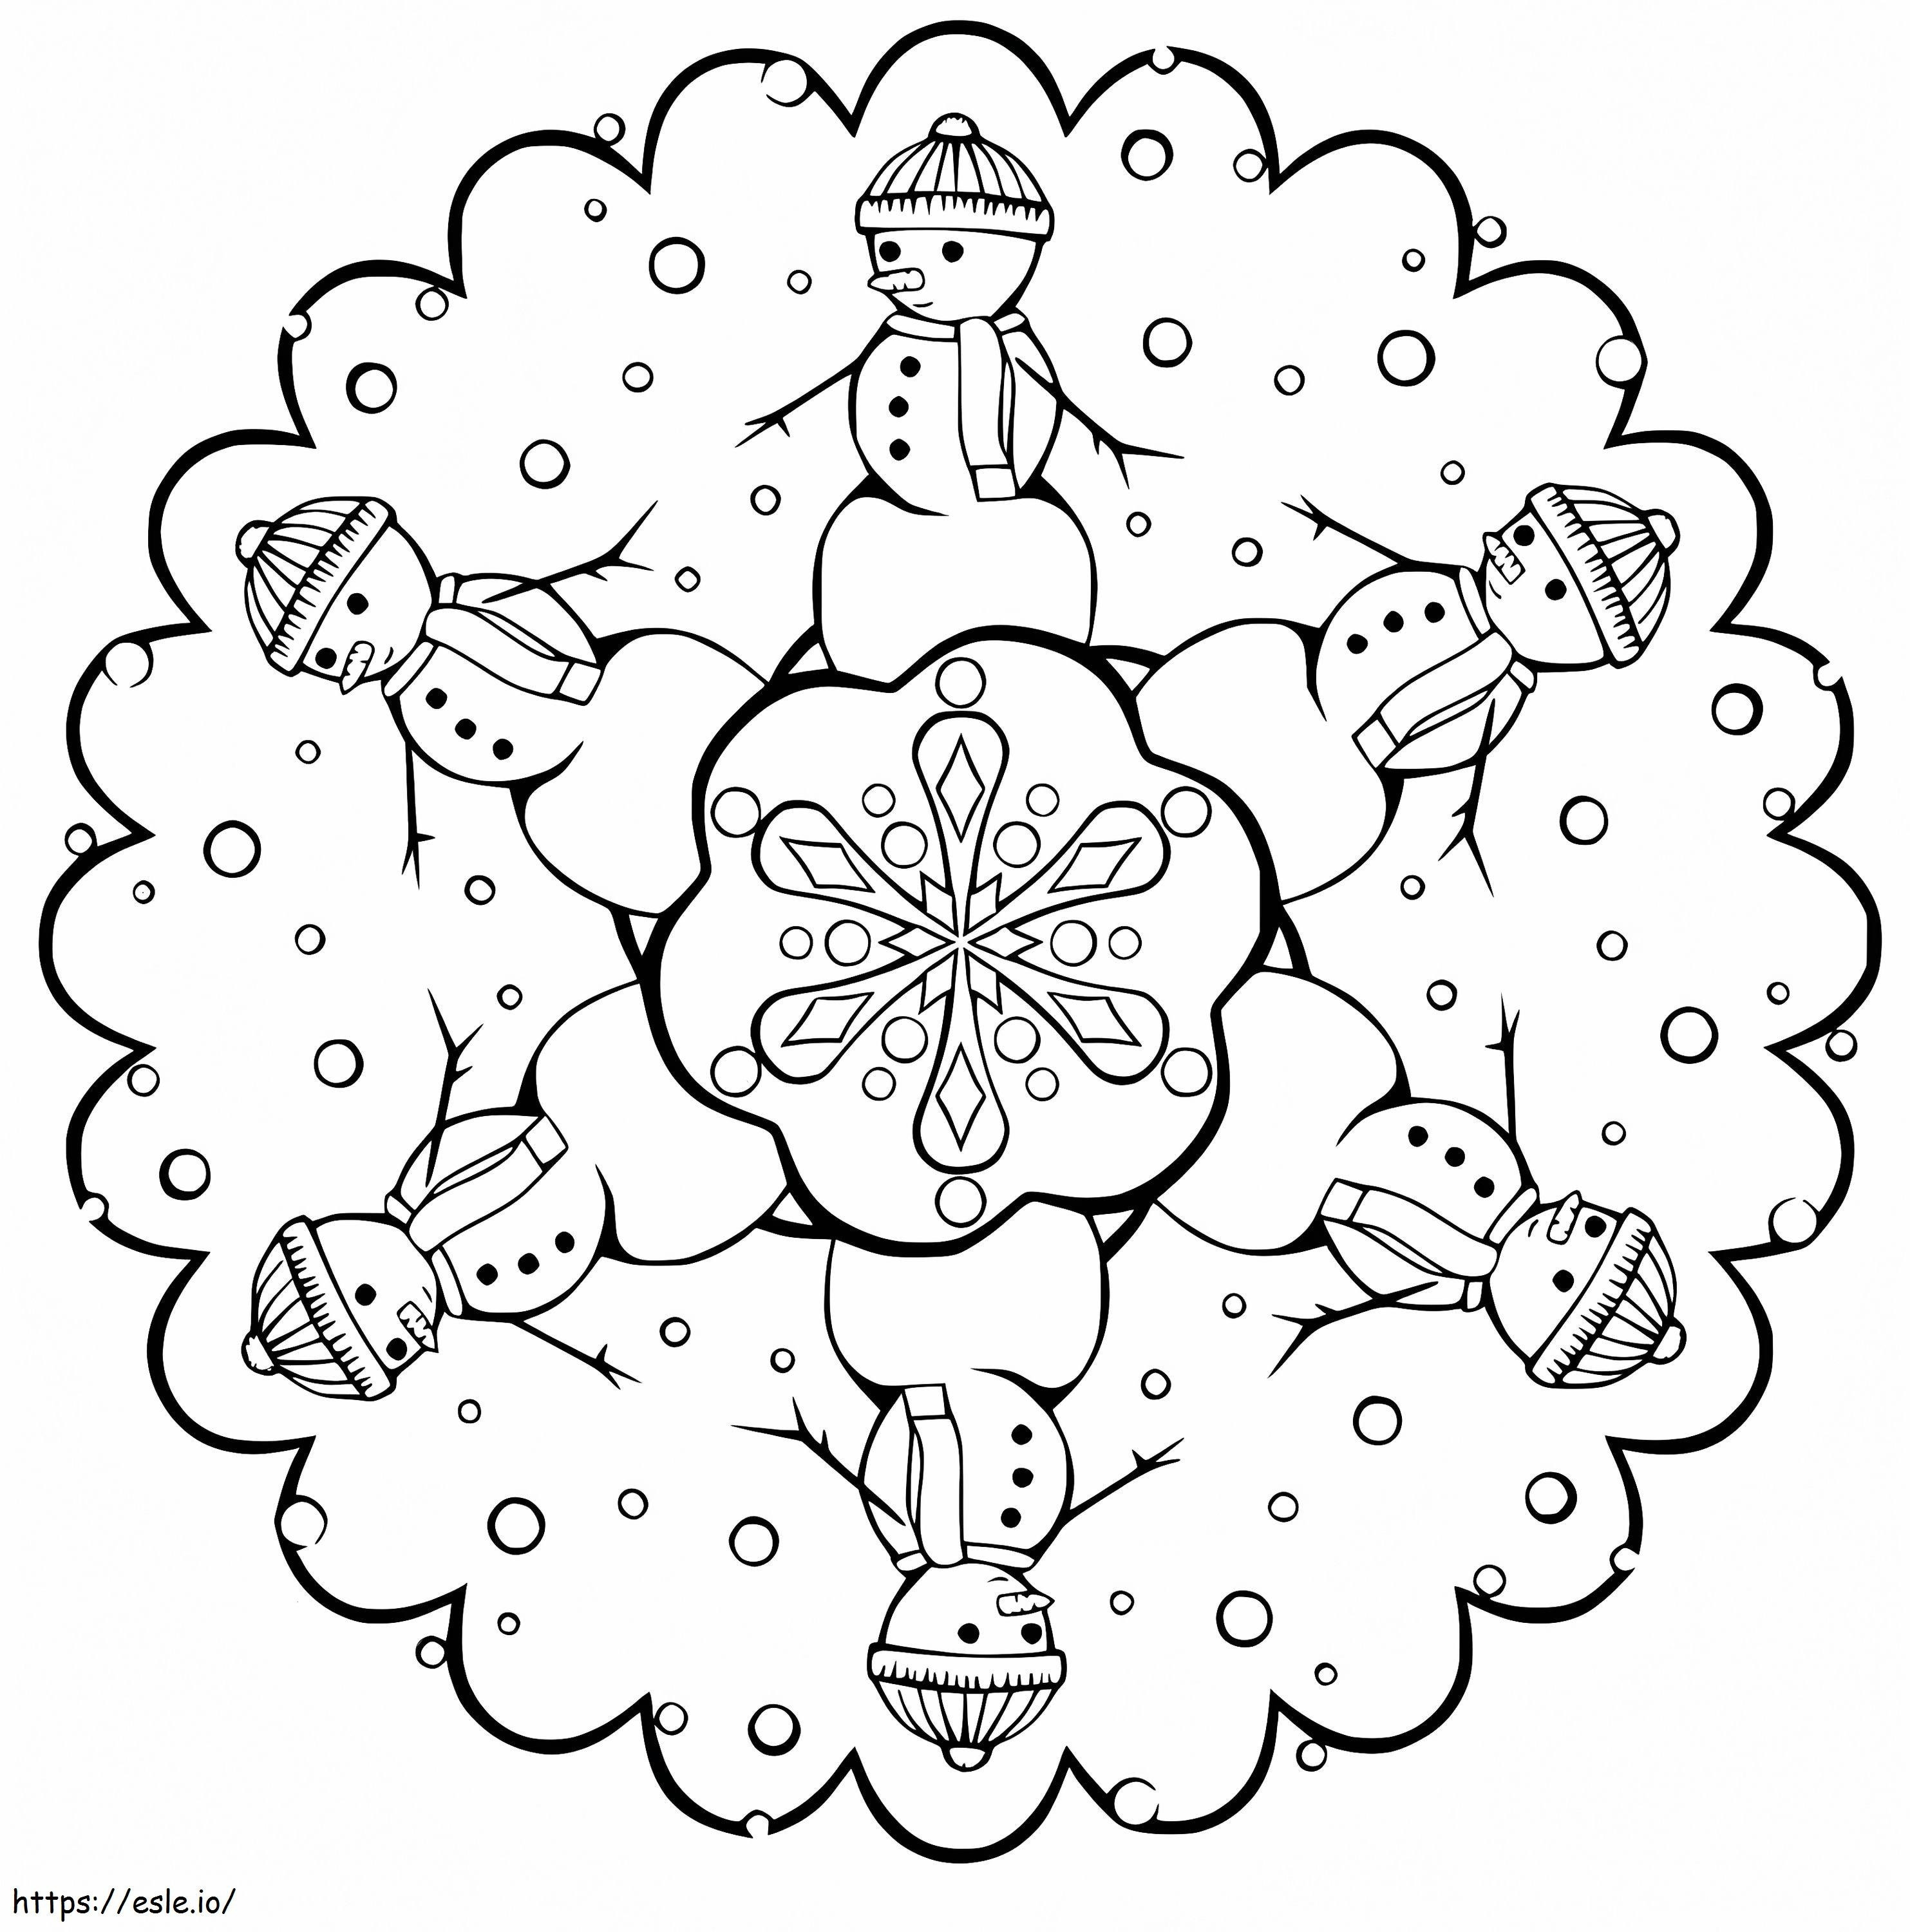 Mandala De Navidad Con Muñecos De Nieve para colorear